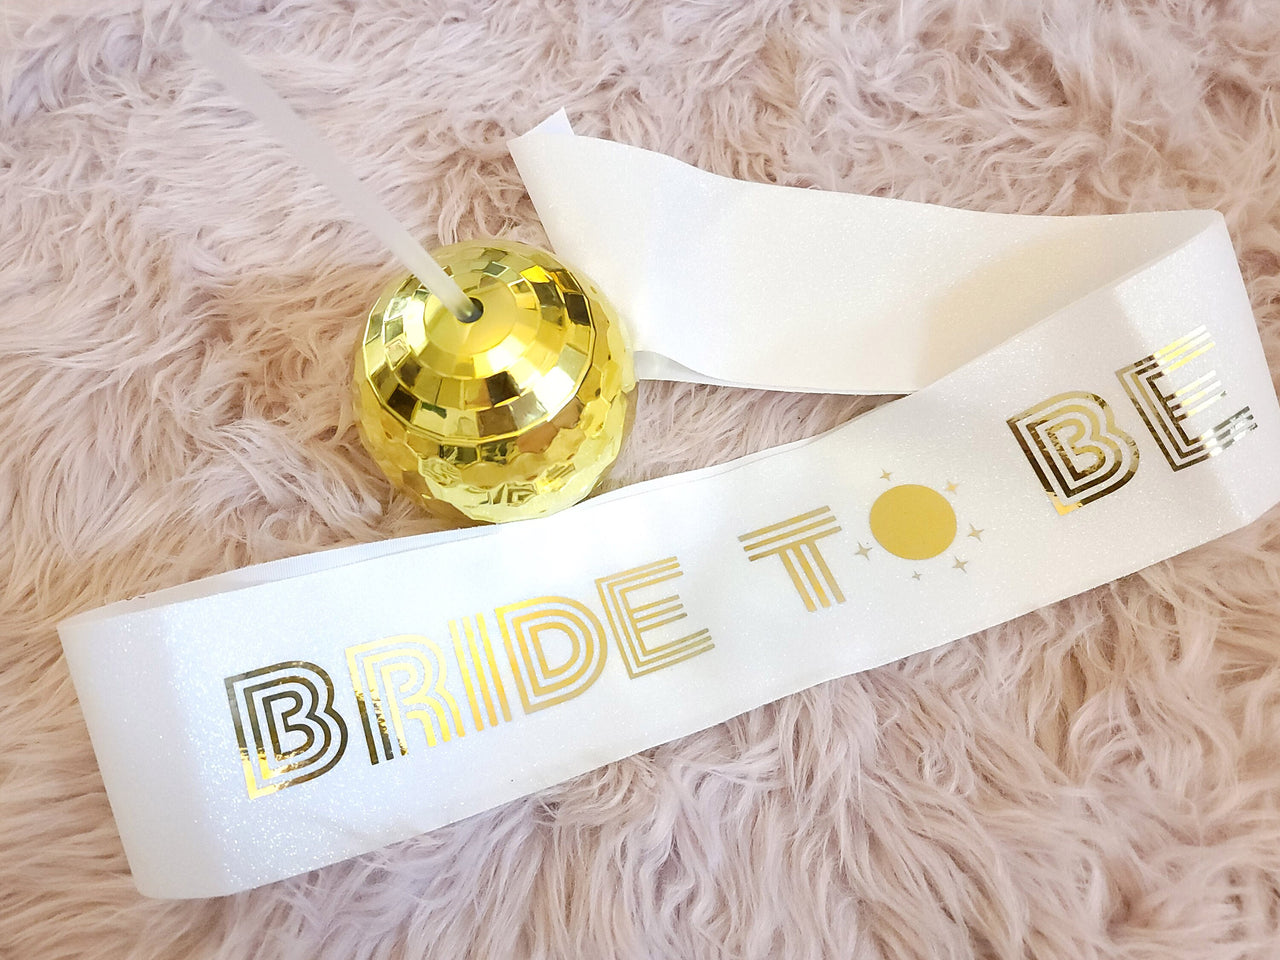 Bride To Be Disco Theme Sash For Last Disco Bachelorette